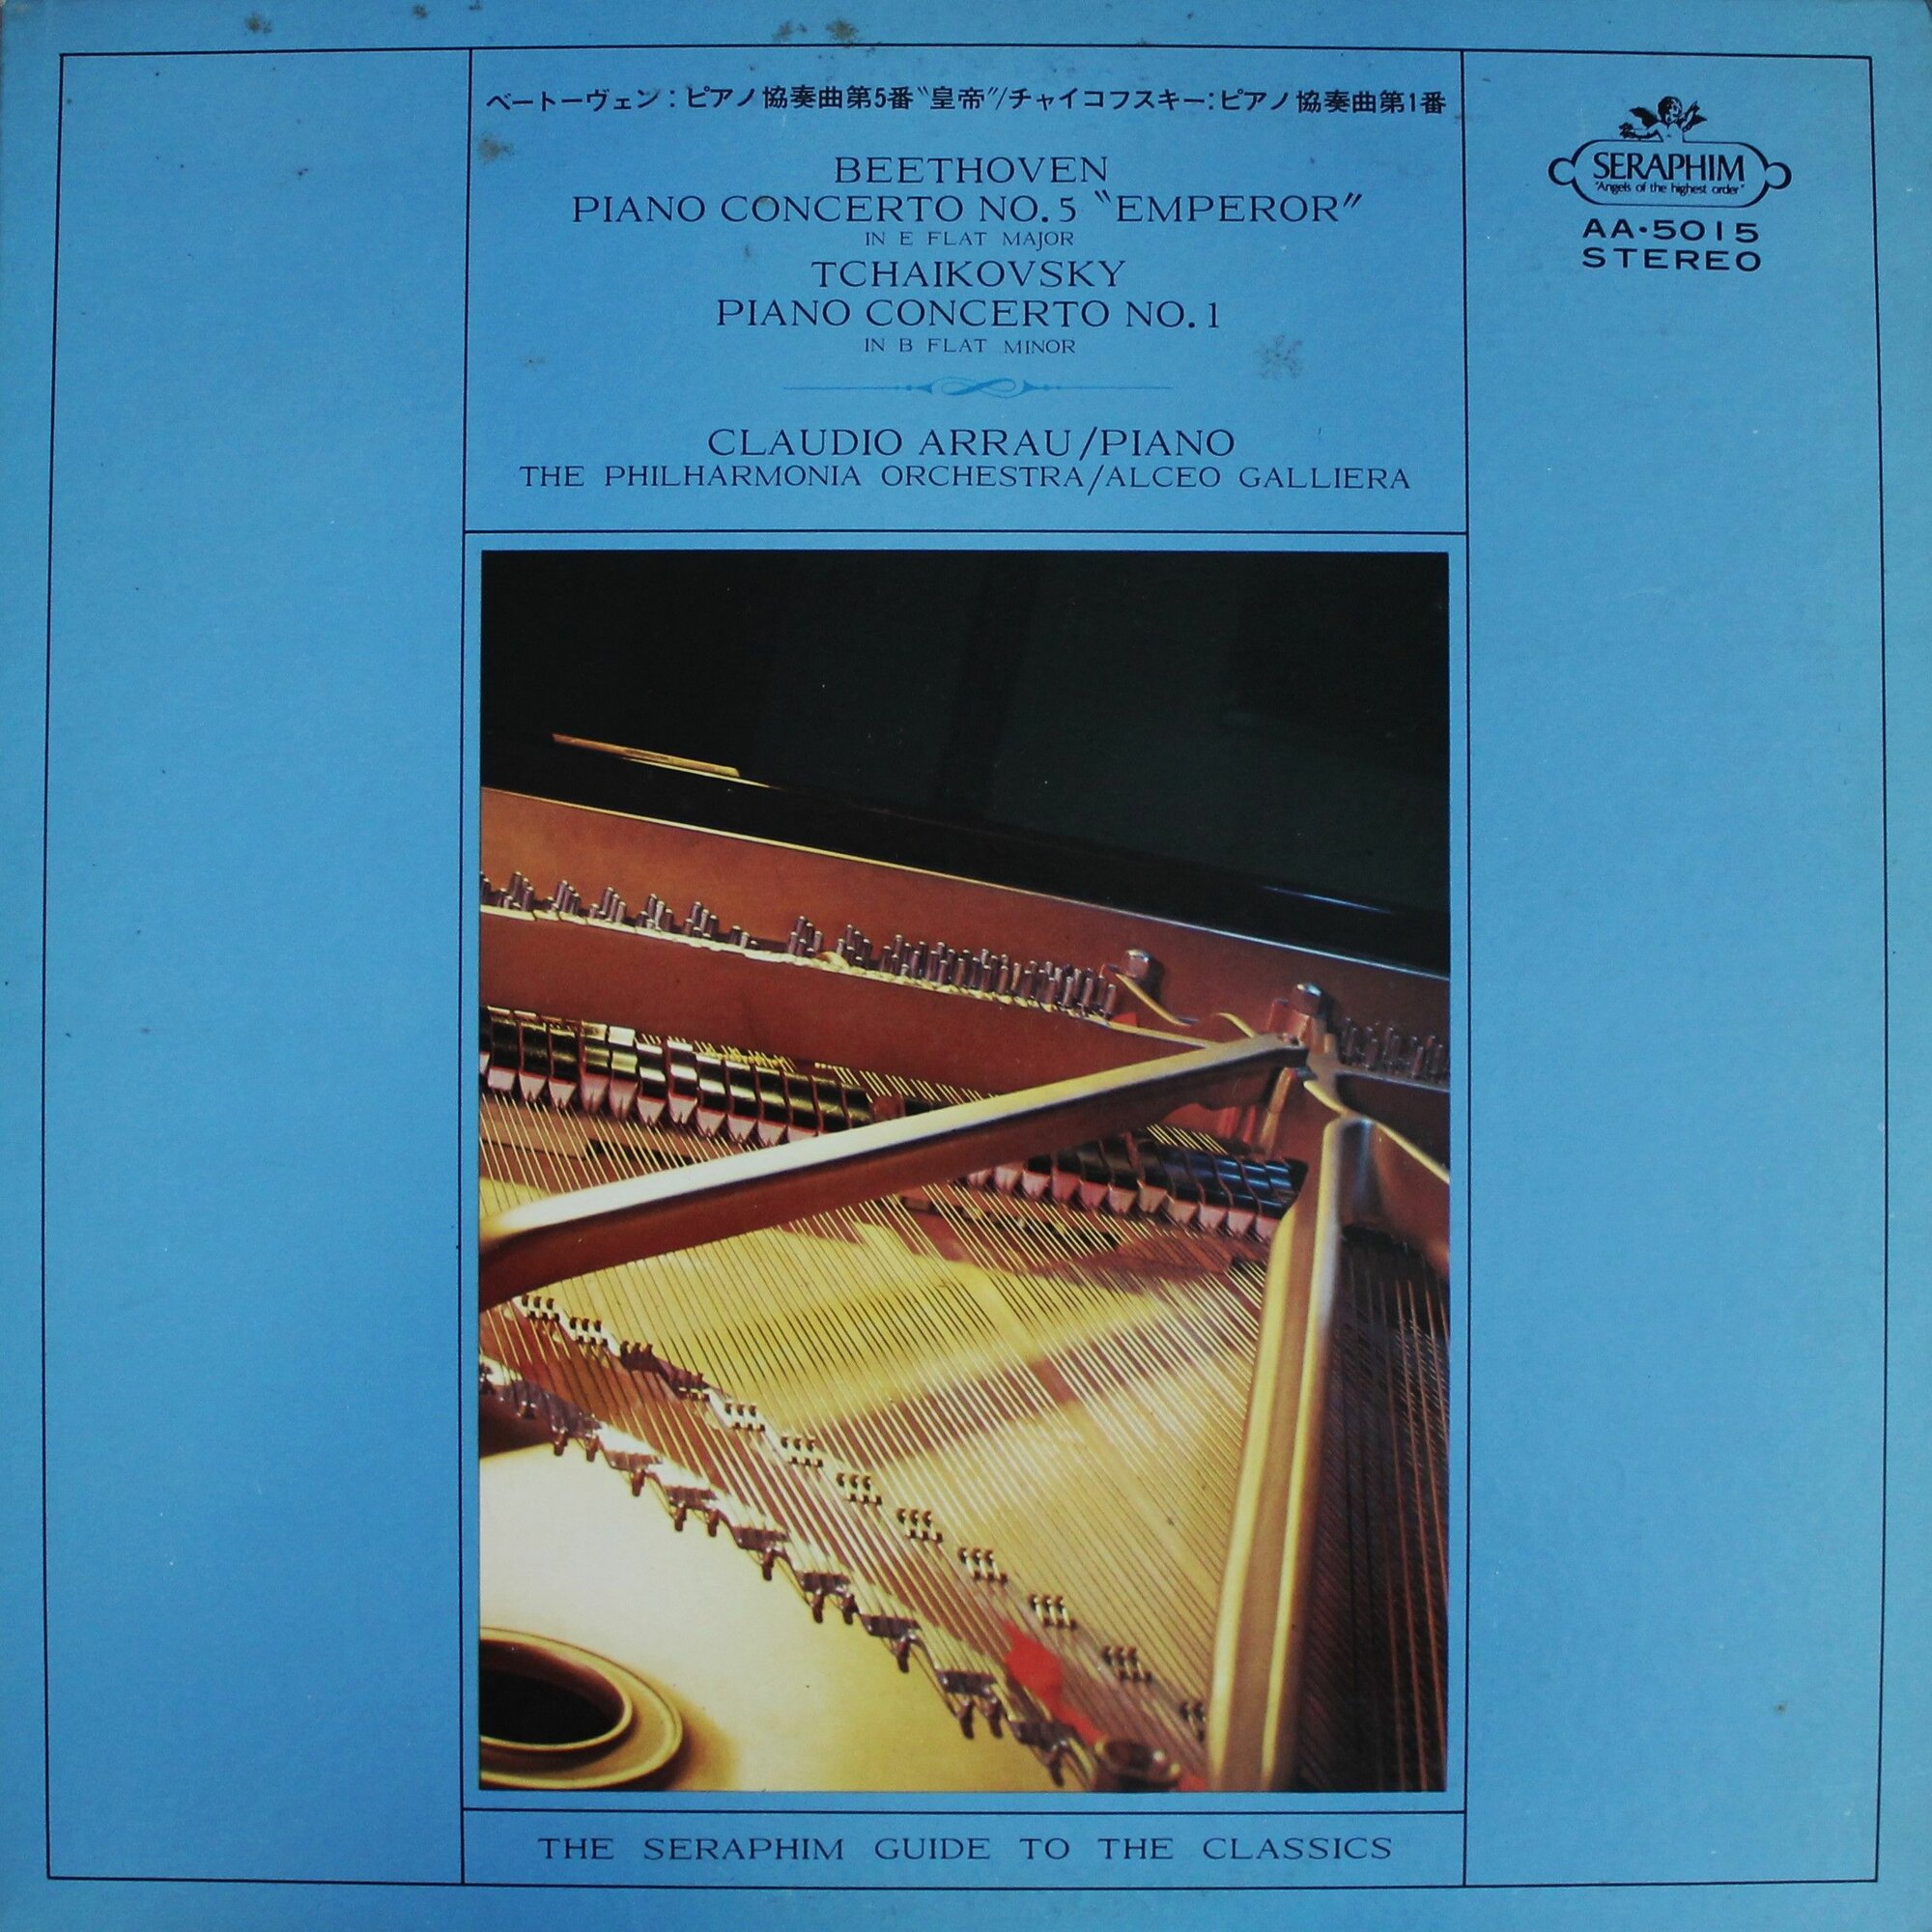 Виниловая пластинка Beethoven - Piano Concerto No.5 "Emperor" & Tchaikovsky - Piano Concerto No.1. Claudio Arrau/Piano. The Philarmonia Orchestra/Alceo Galliera, LP